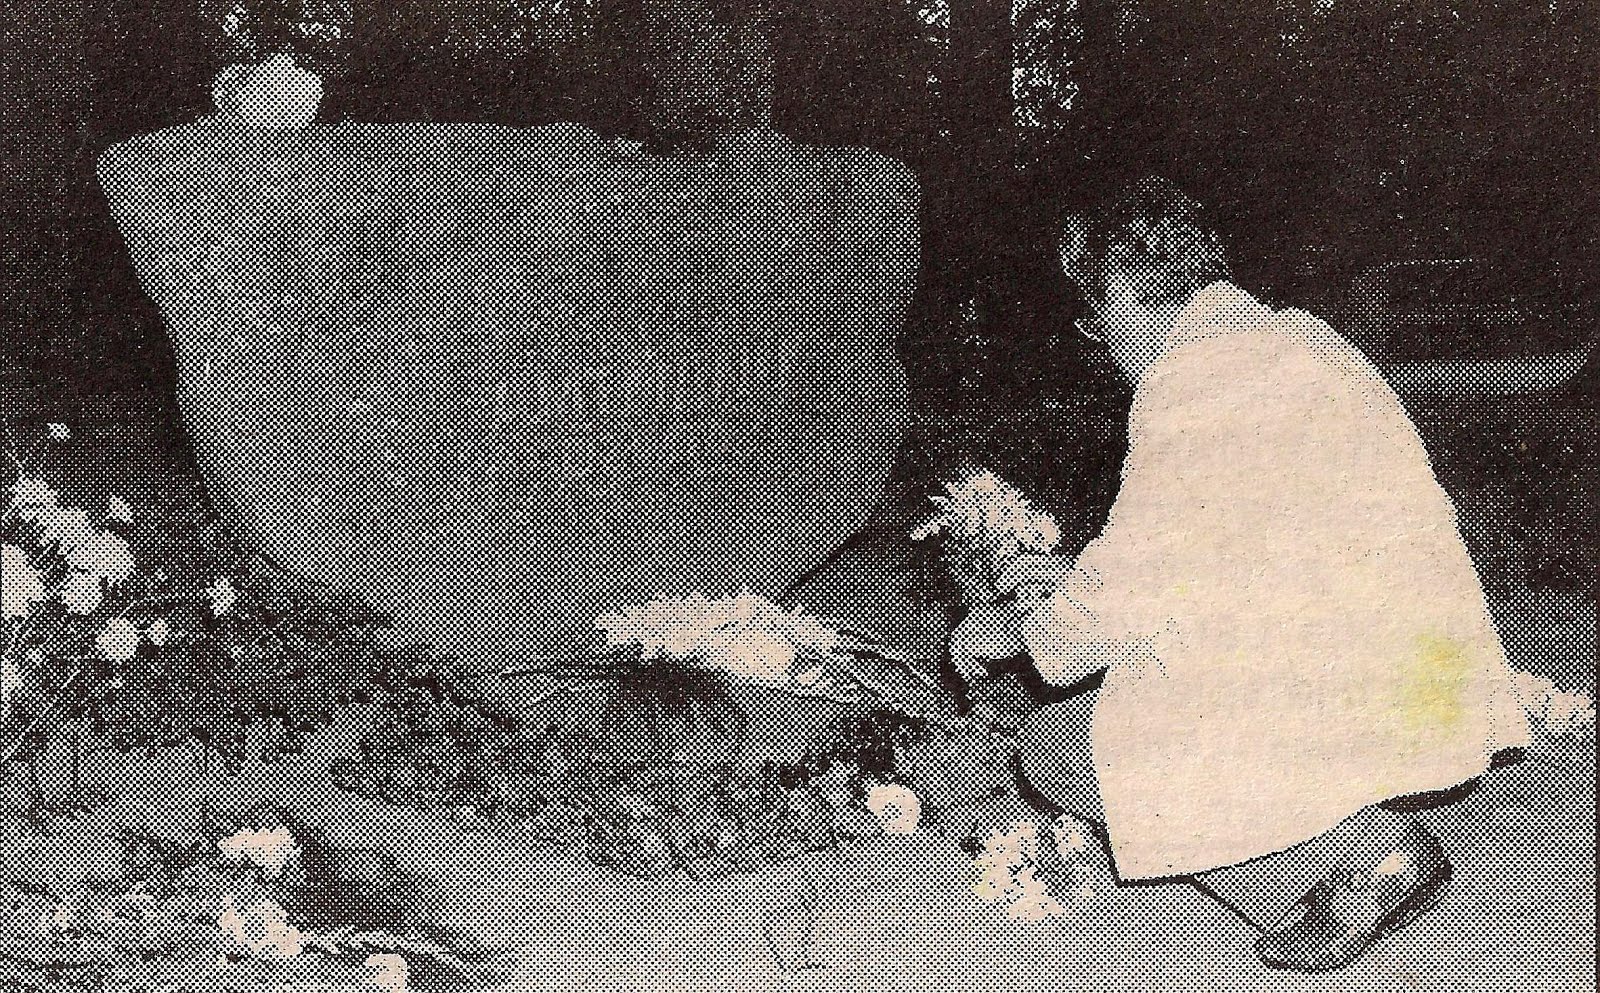 Oļģerts Šalkonis pie Amtmaņu dzimtas kapa 1998. gada 5. augustā